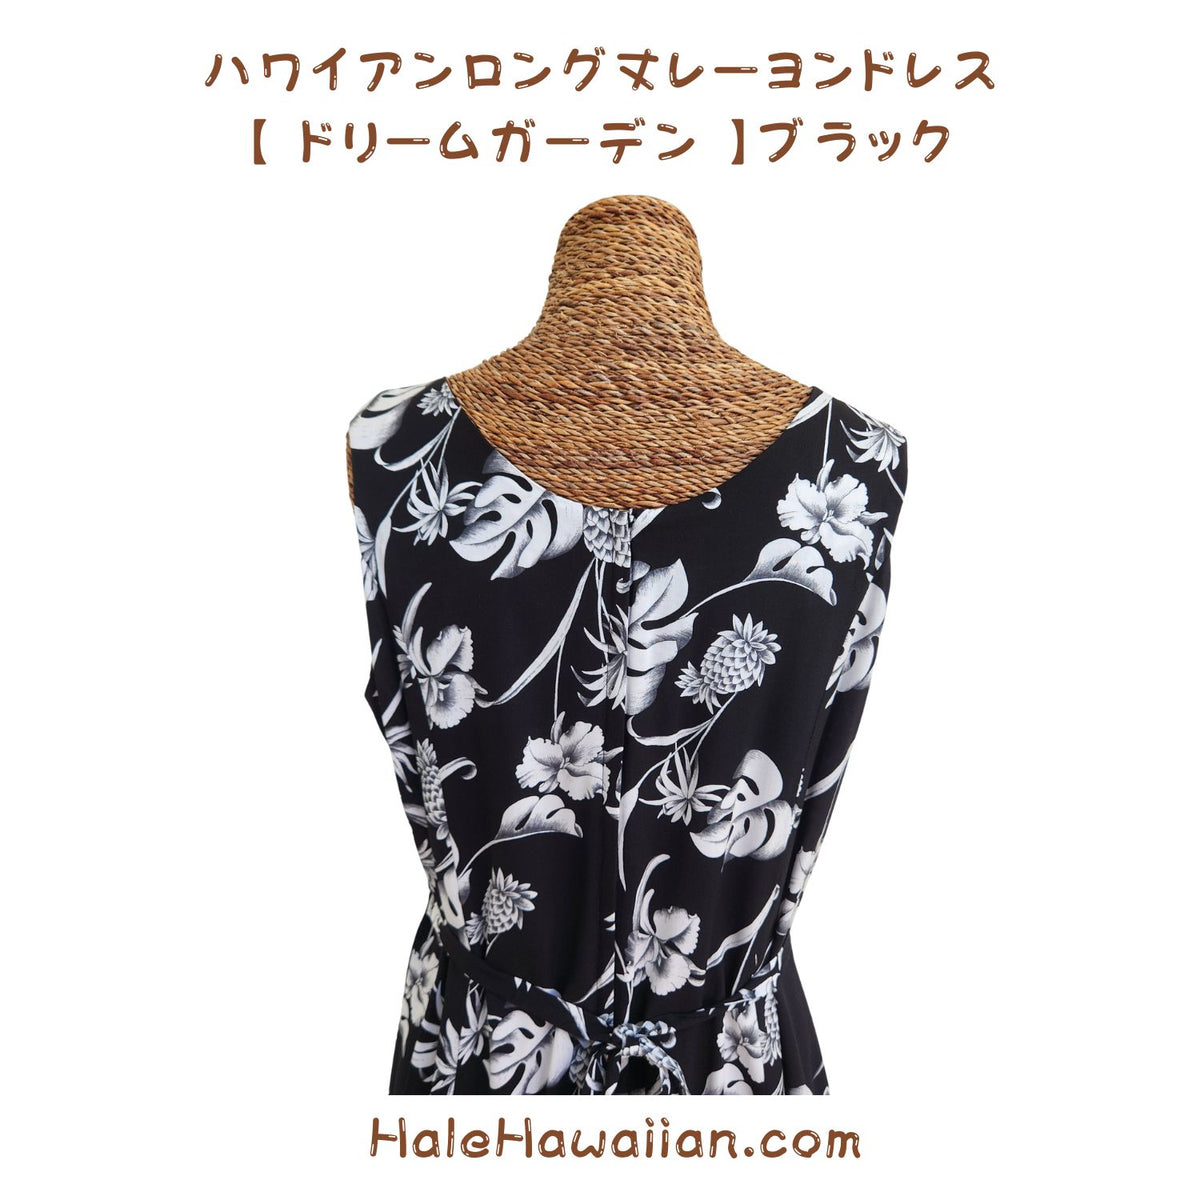 Hawaiian Tank Dress, Semi-Long Length [Dream Garden]